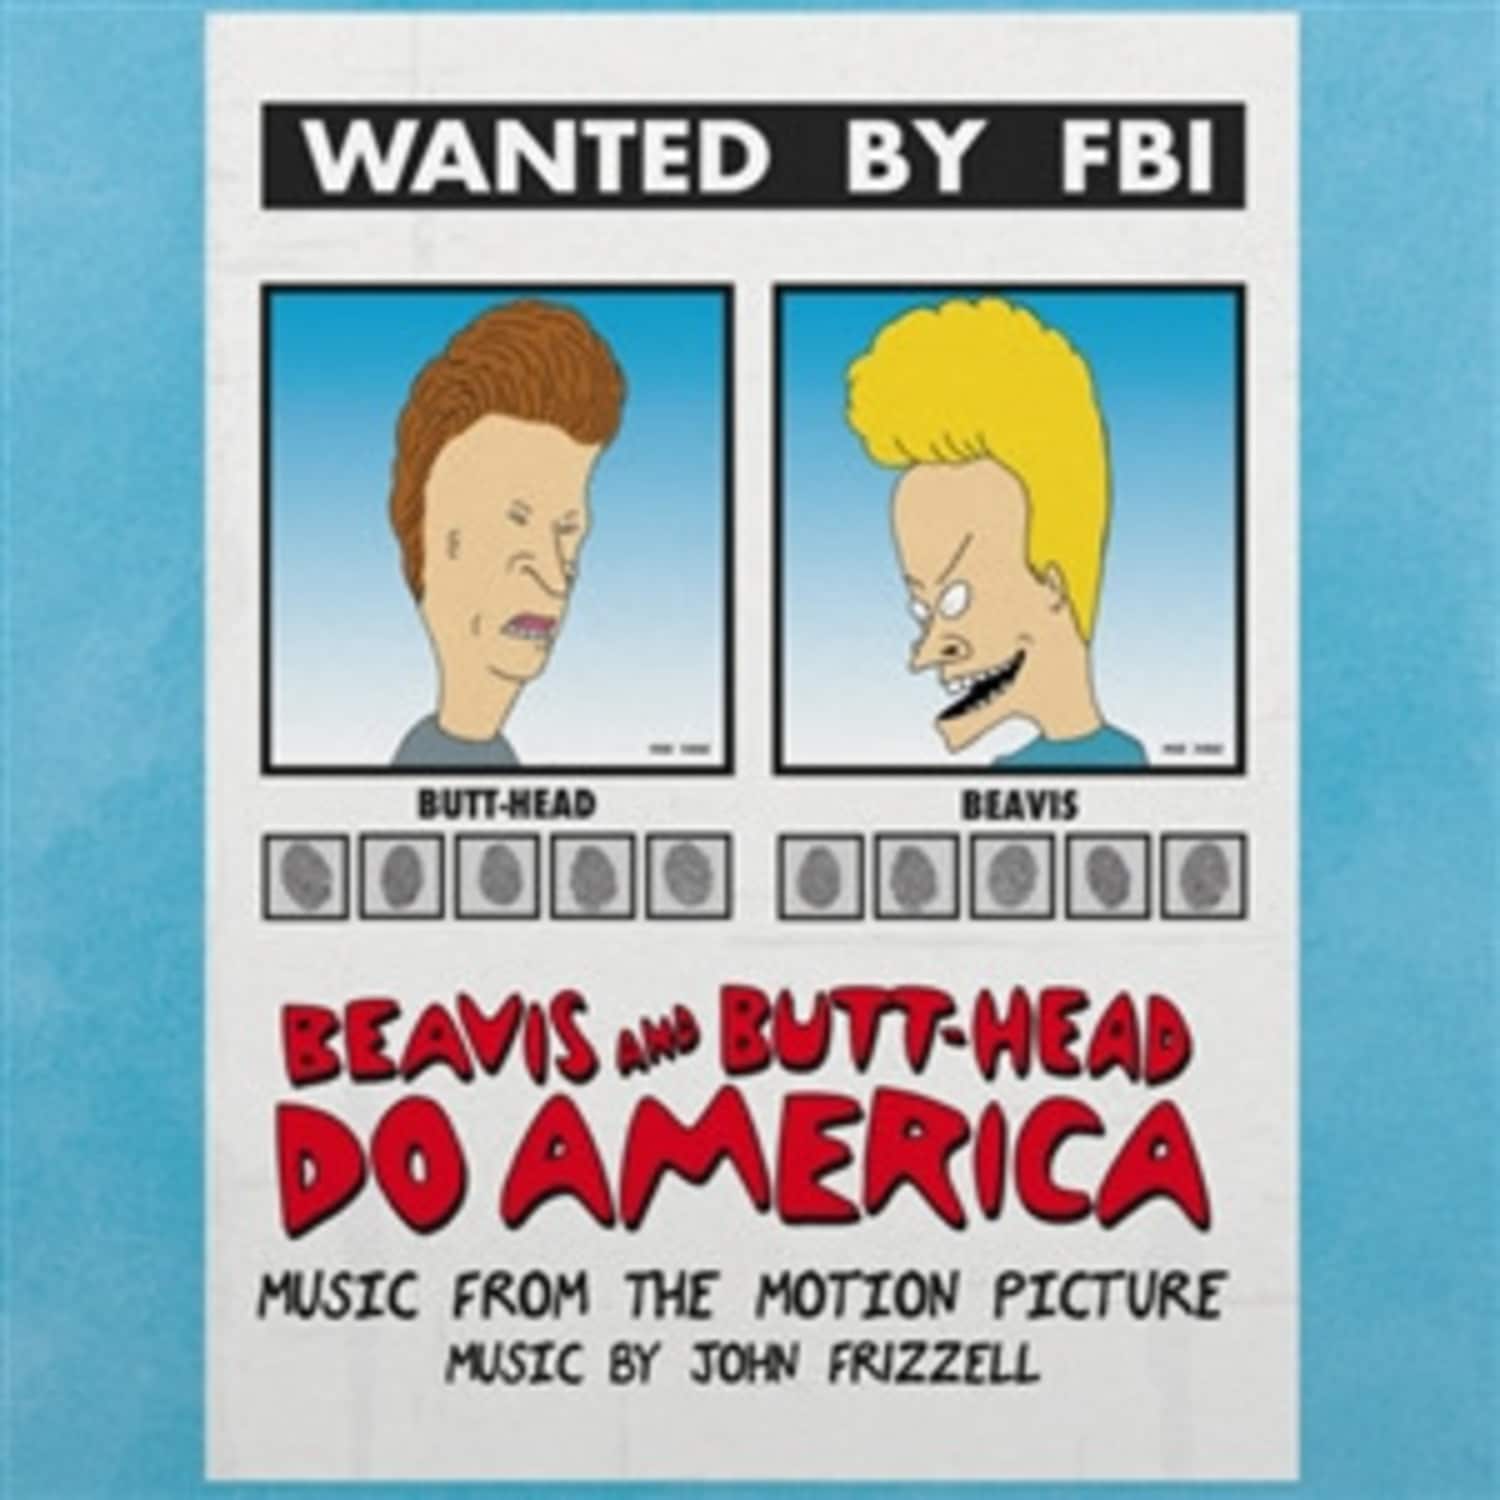 John Frizzell - BEAVIS AND BUTT-HEAD DO AMERICA 